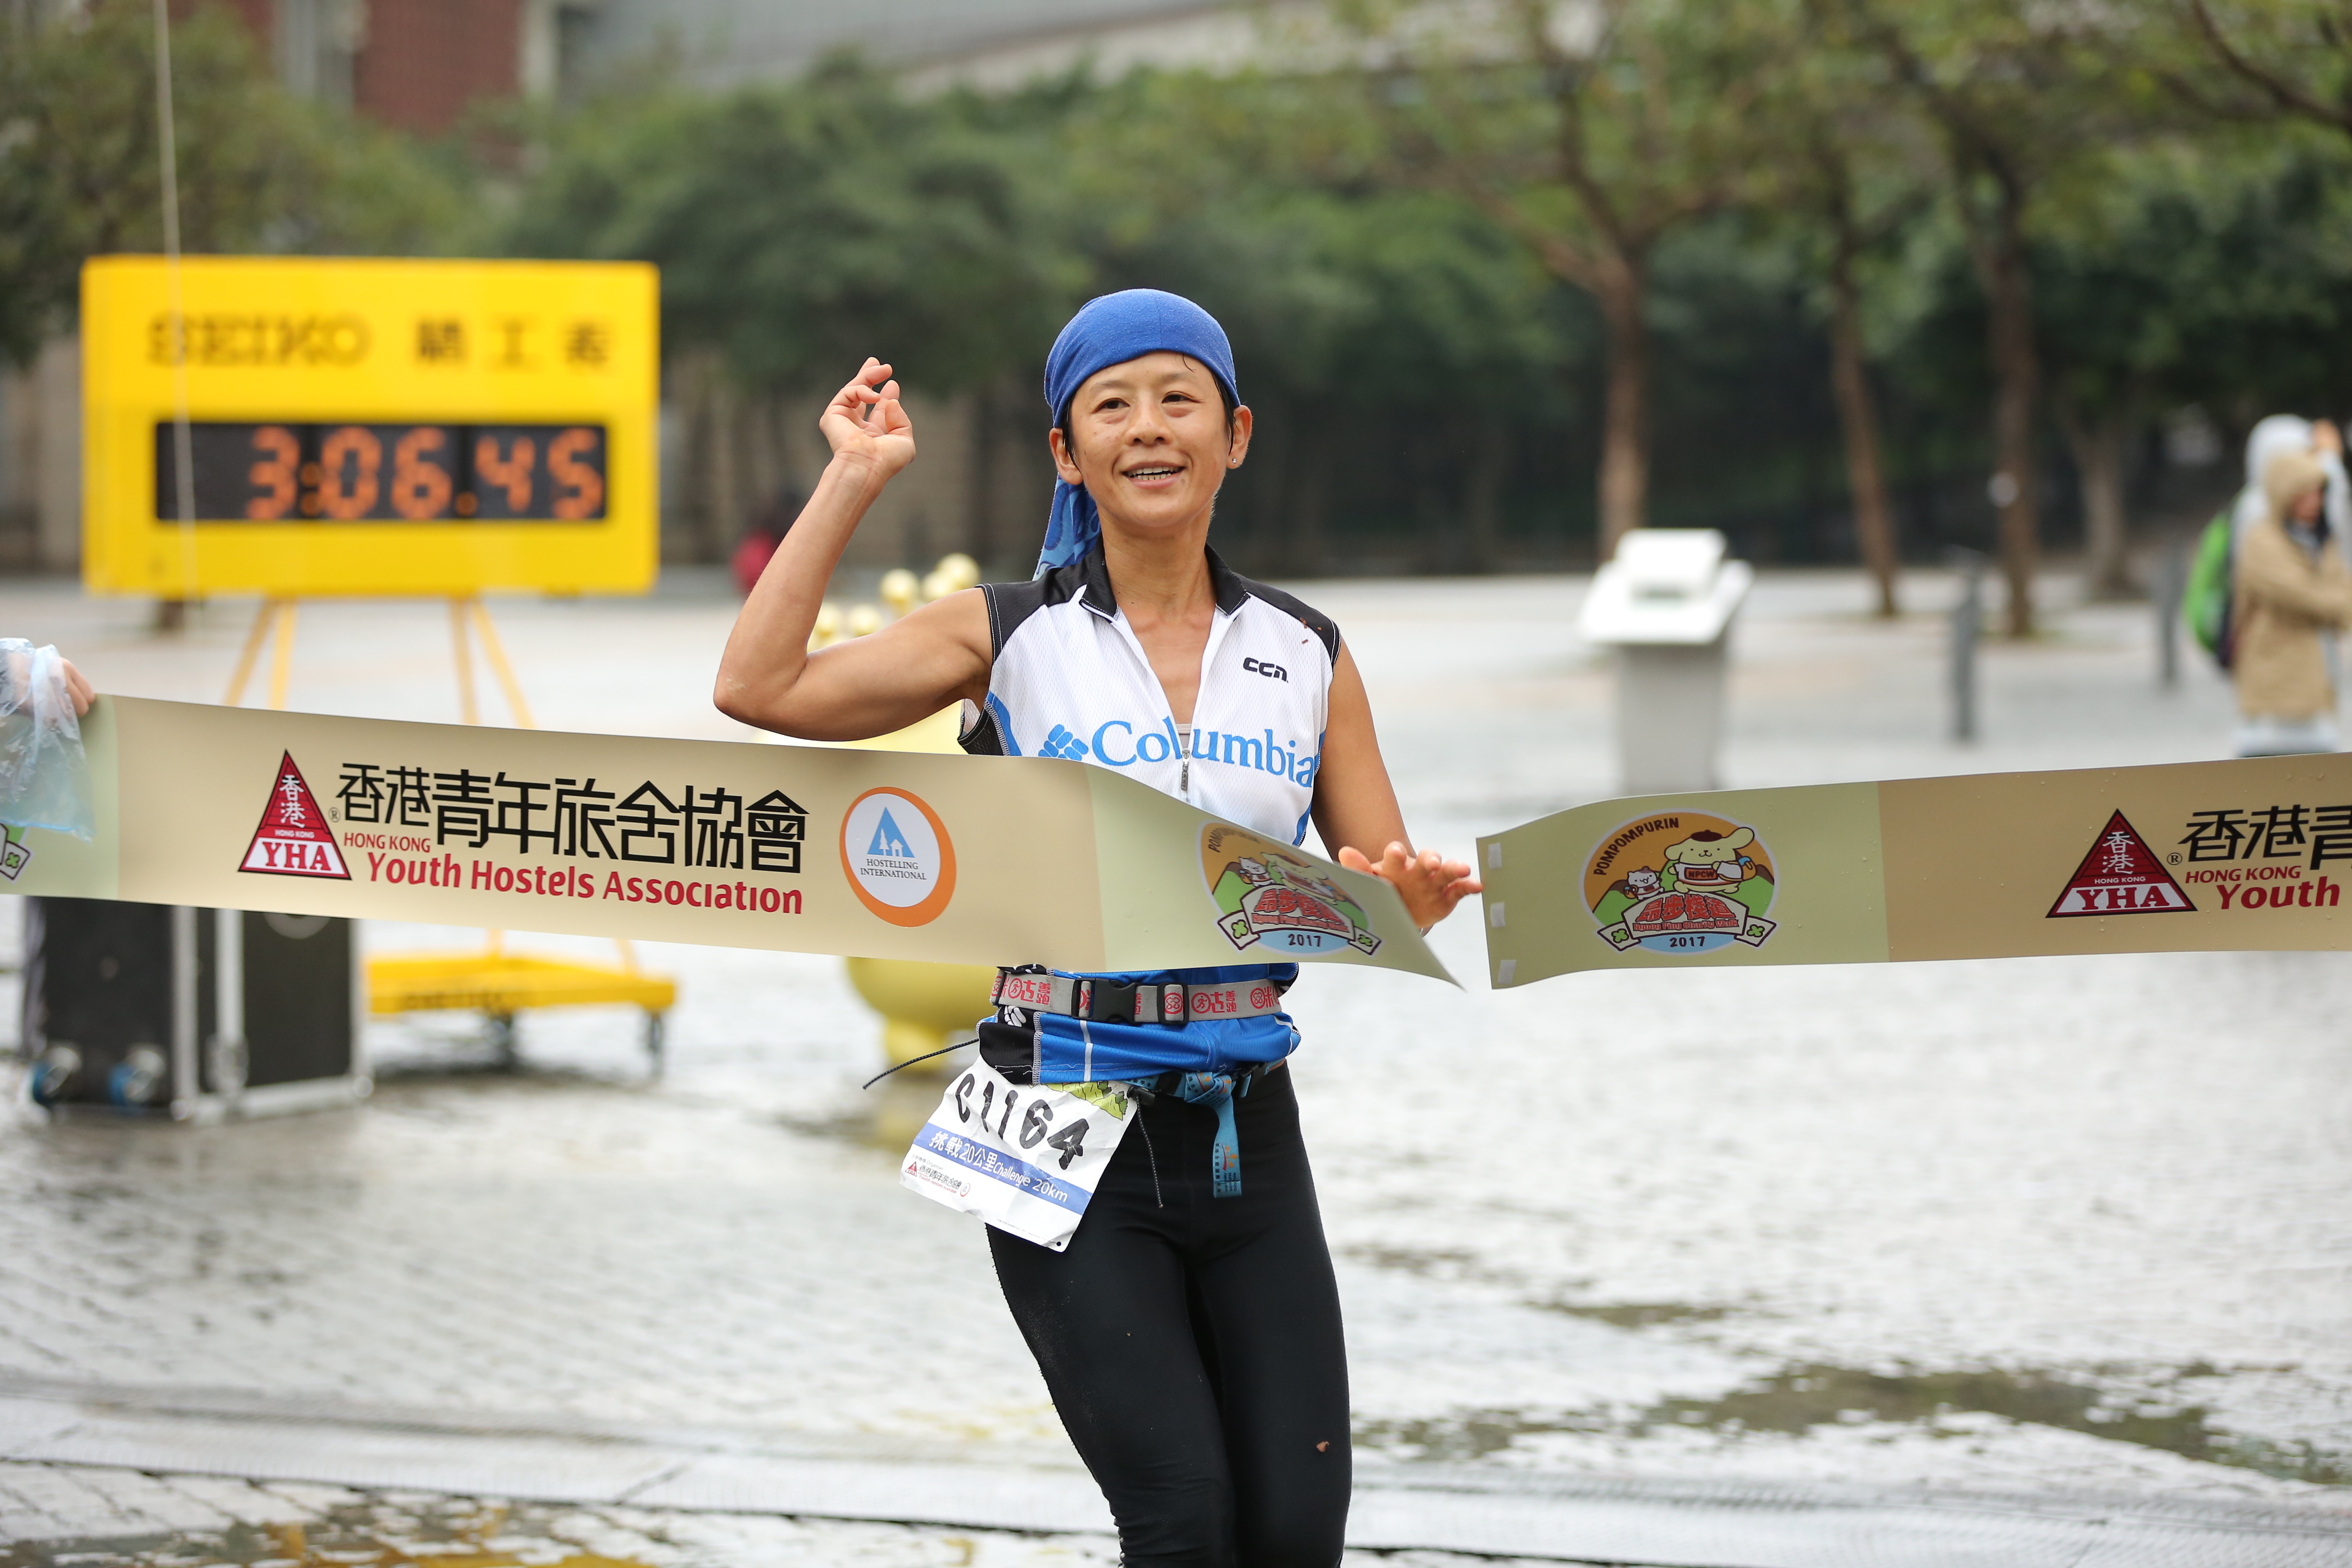 「挑戰20公里」女子個人冠軍Lam Lai Po大幅拋離對手，比第二名快足足一小時衝過終點。